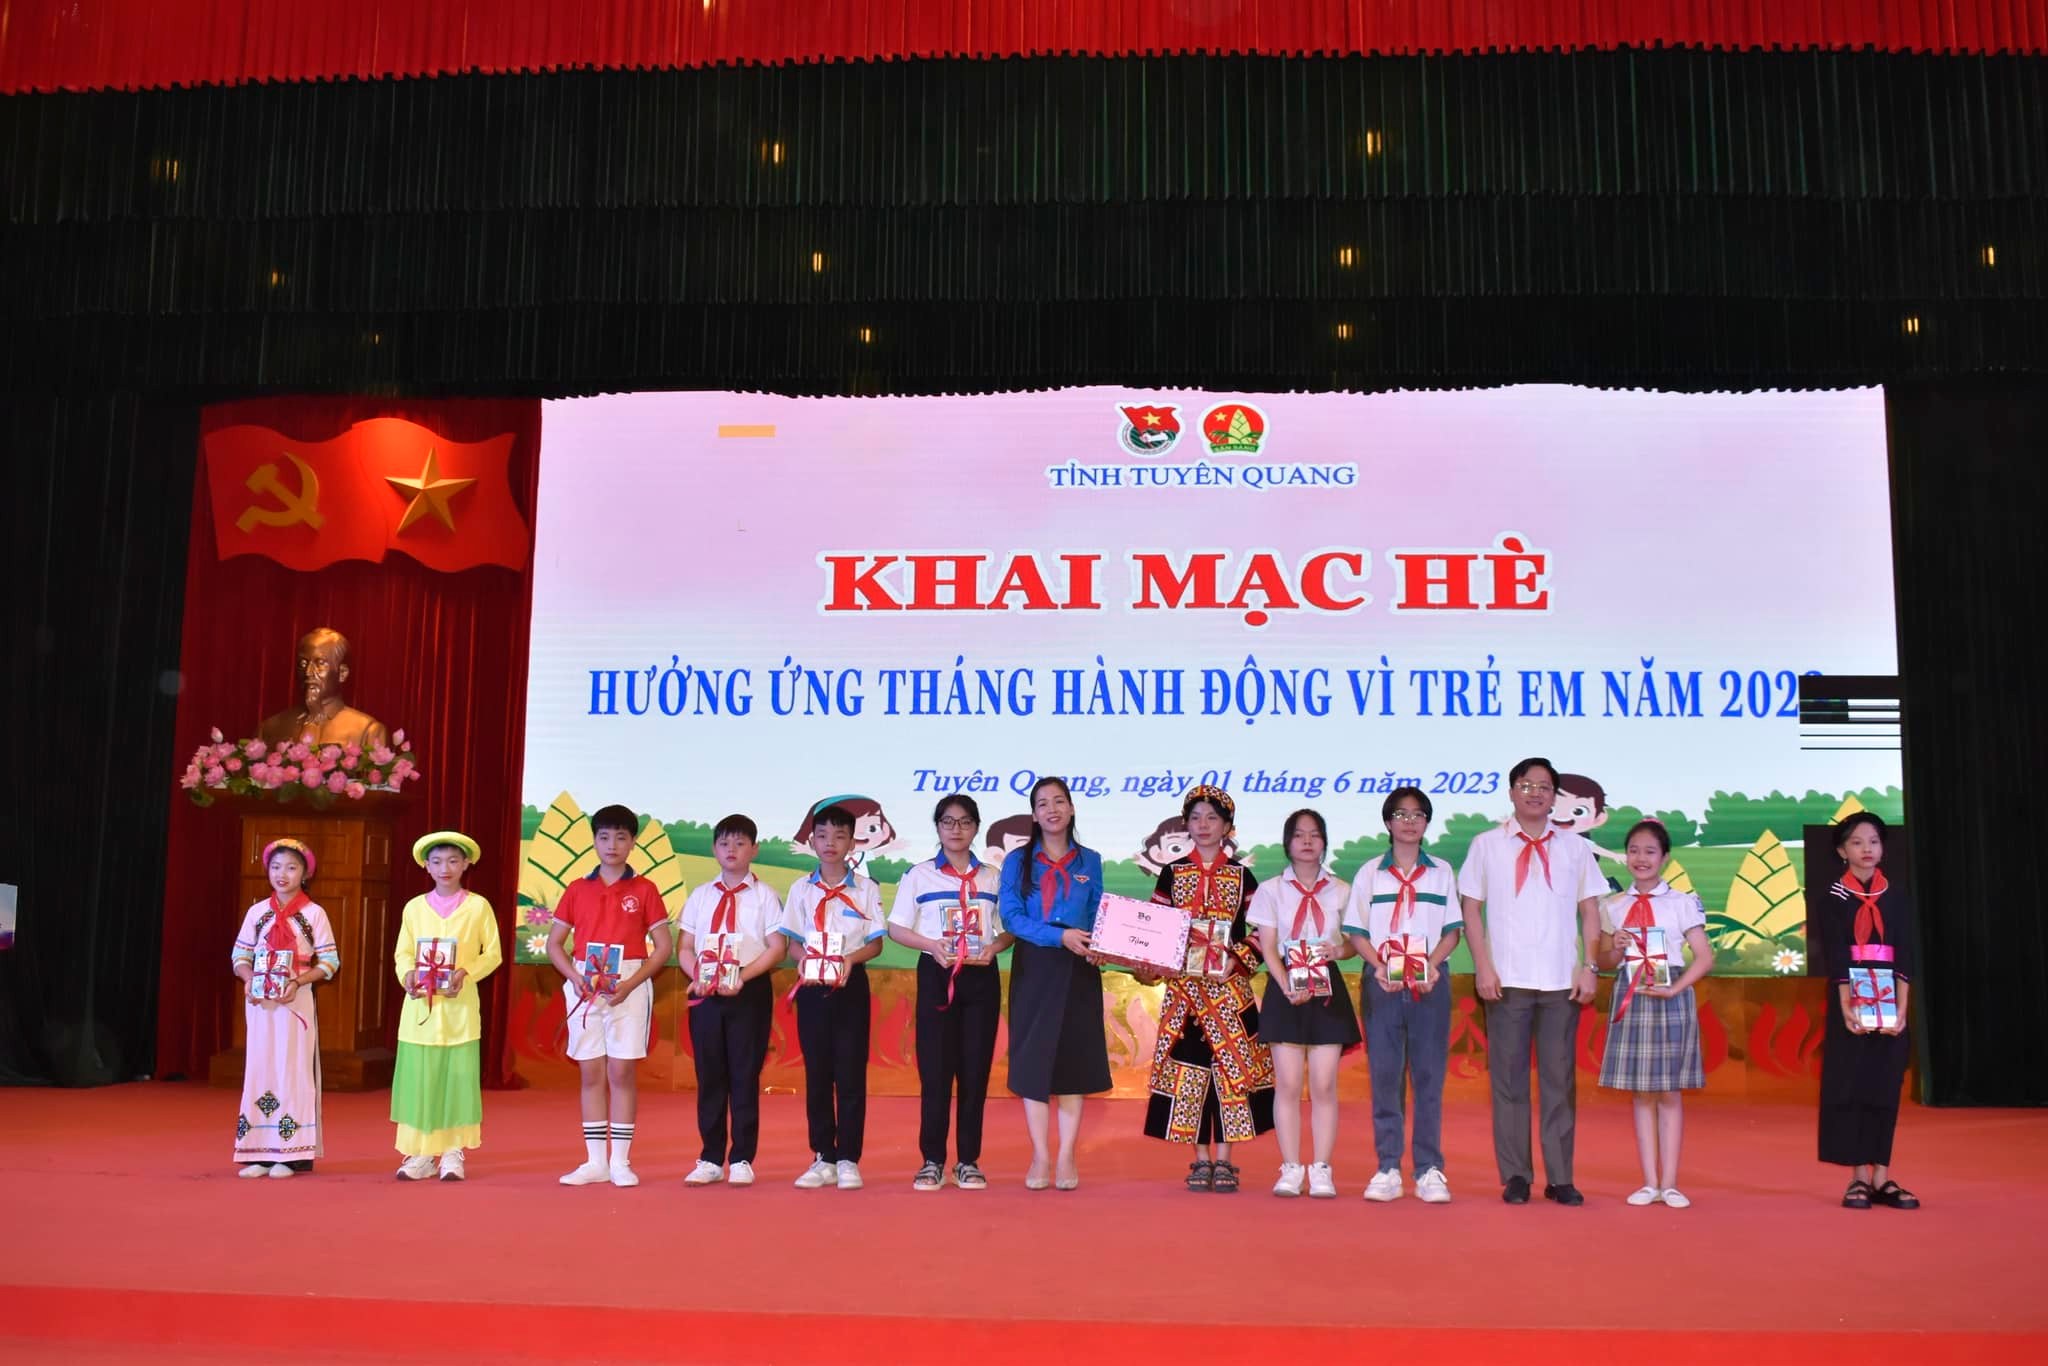 Tuyên Quang: Tổ chức khai mạc hè, hưởng ứng Tháng hành động vì trẻ em năm 2023